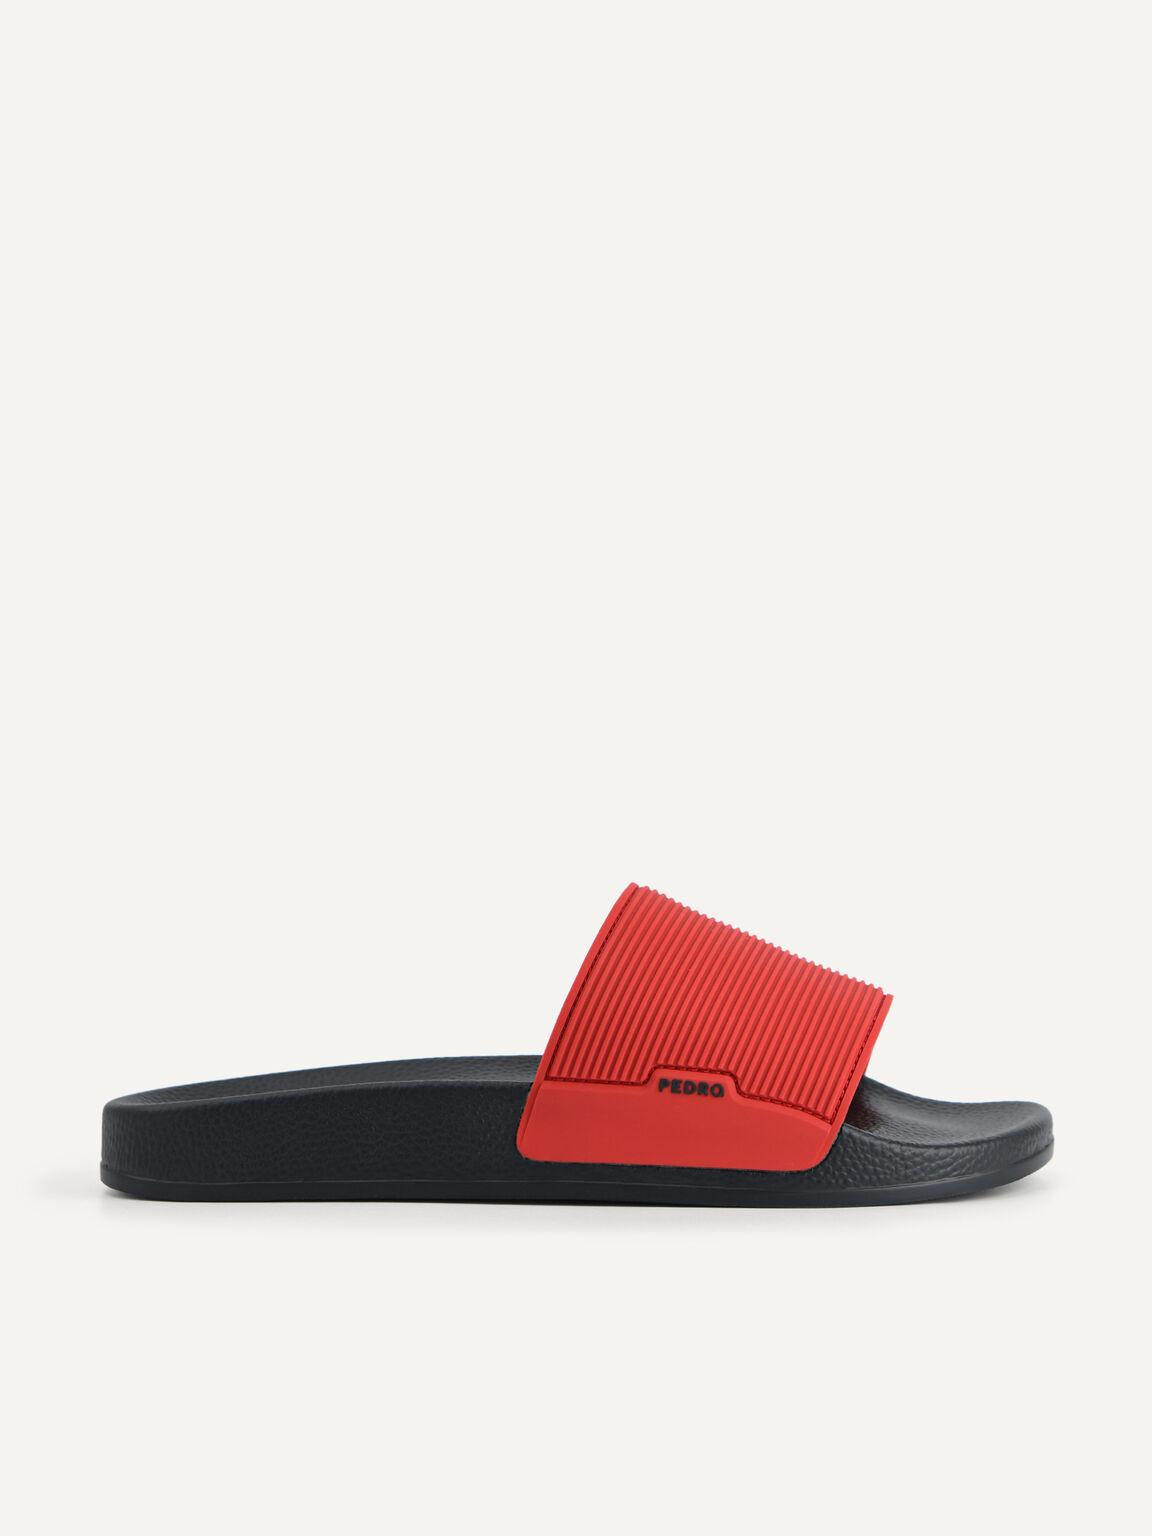 Slide Sandals, Red